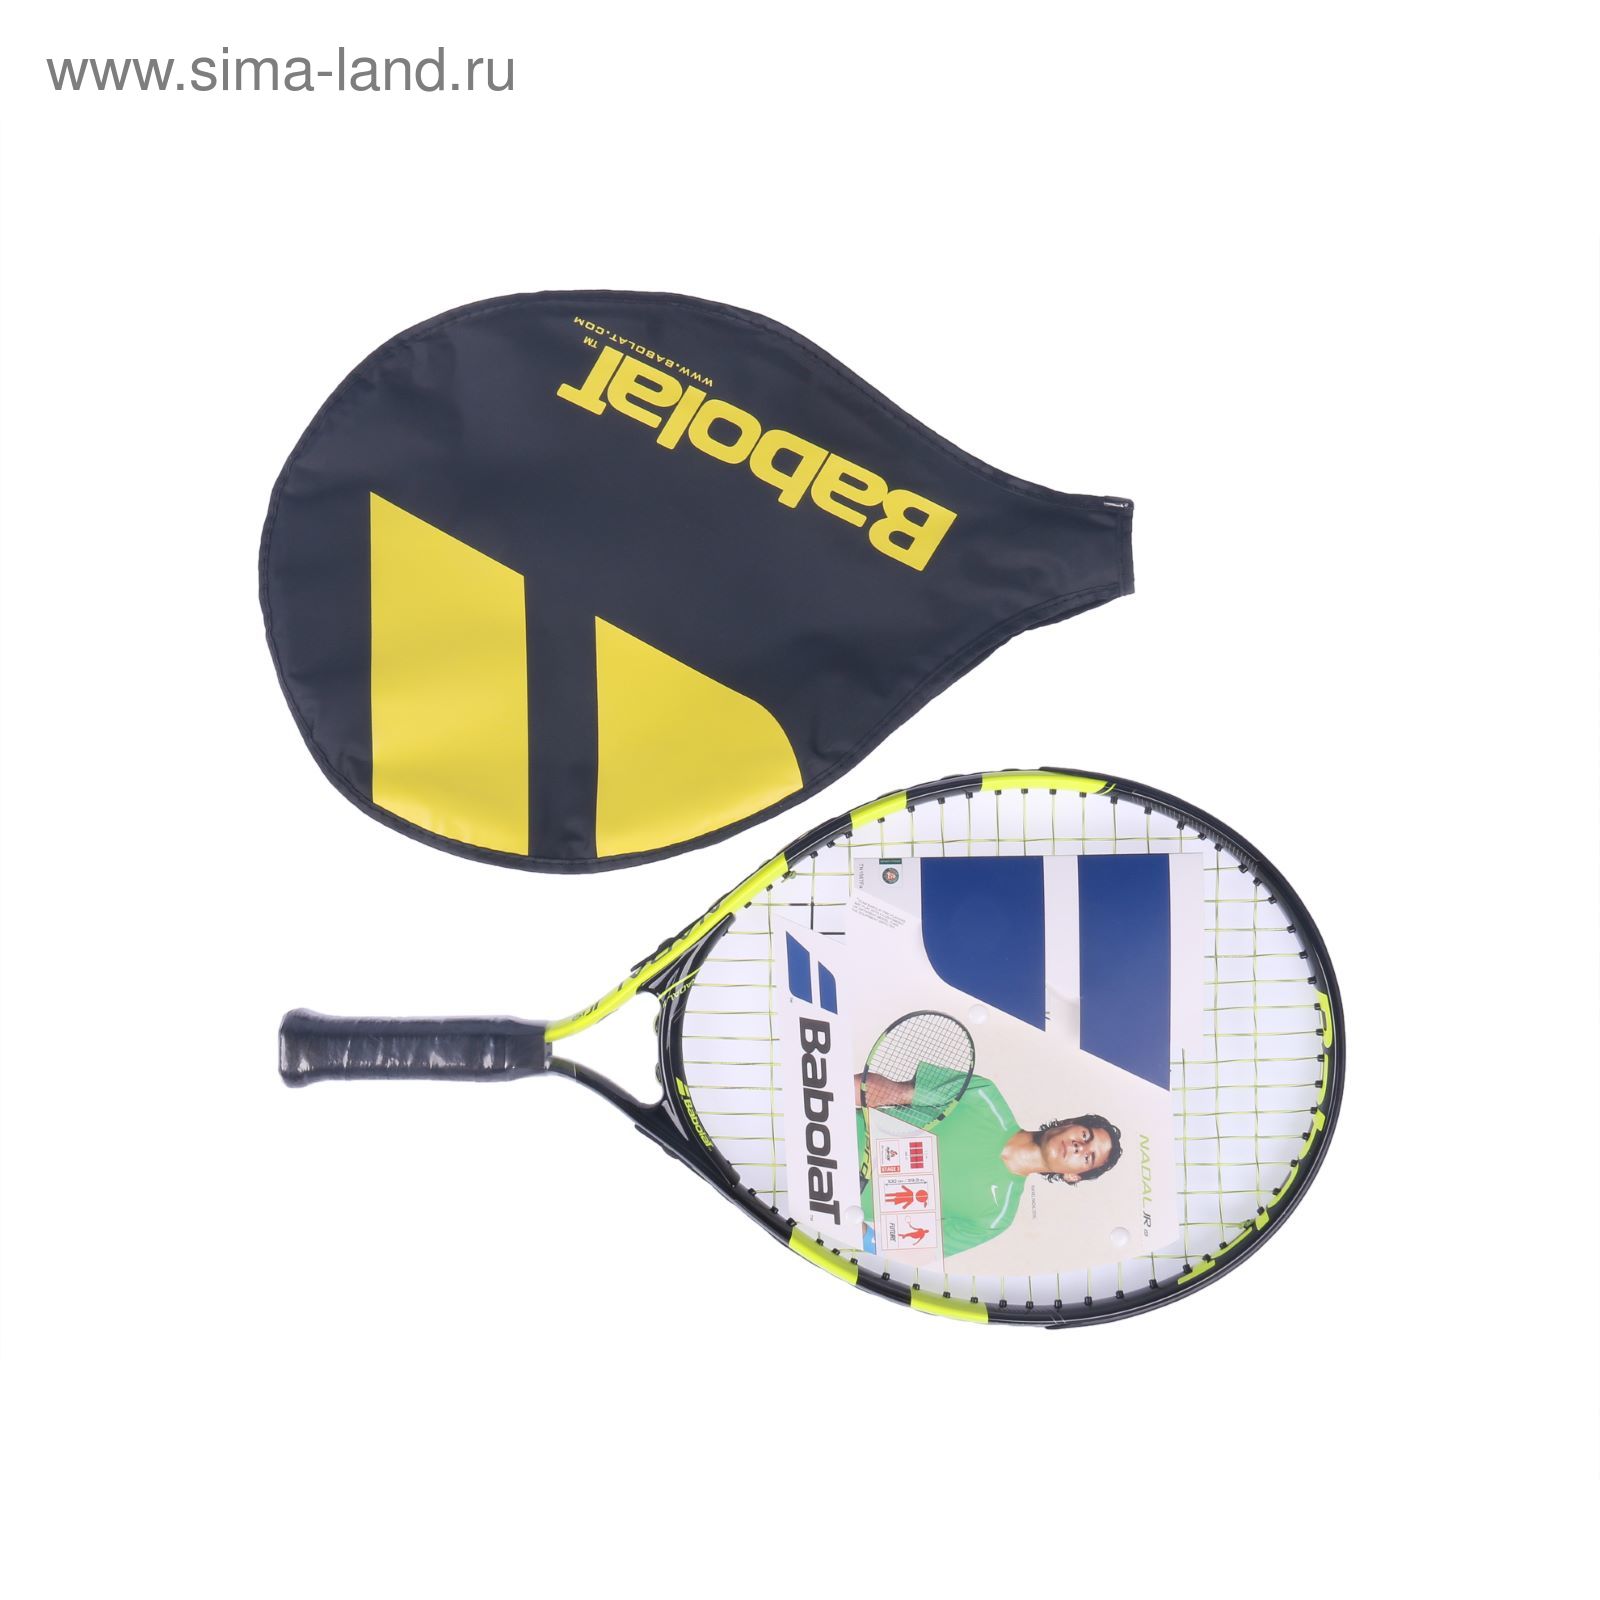 Ракетка для большого тенниса Nadal Junior 19